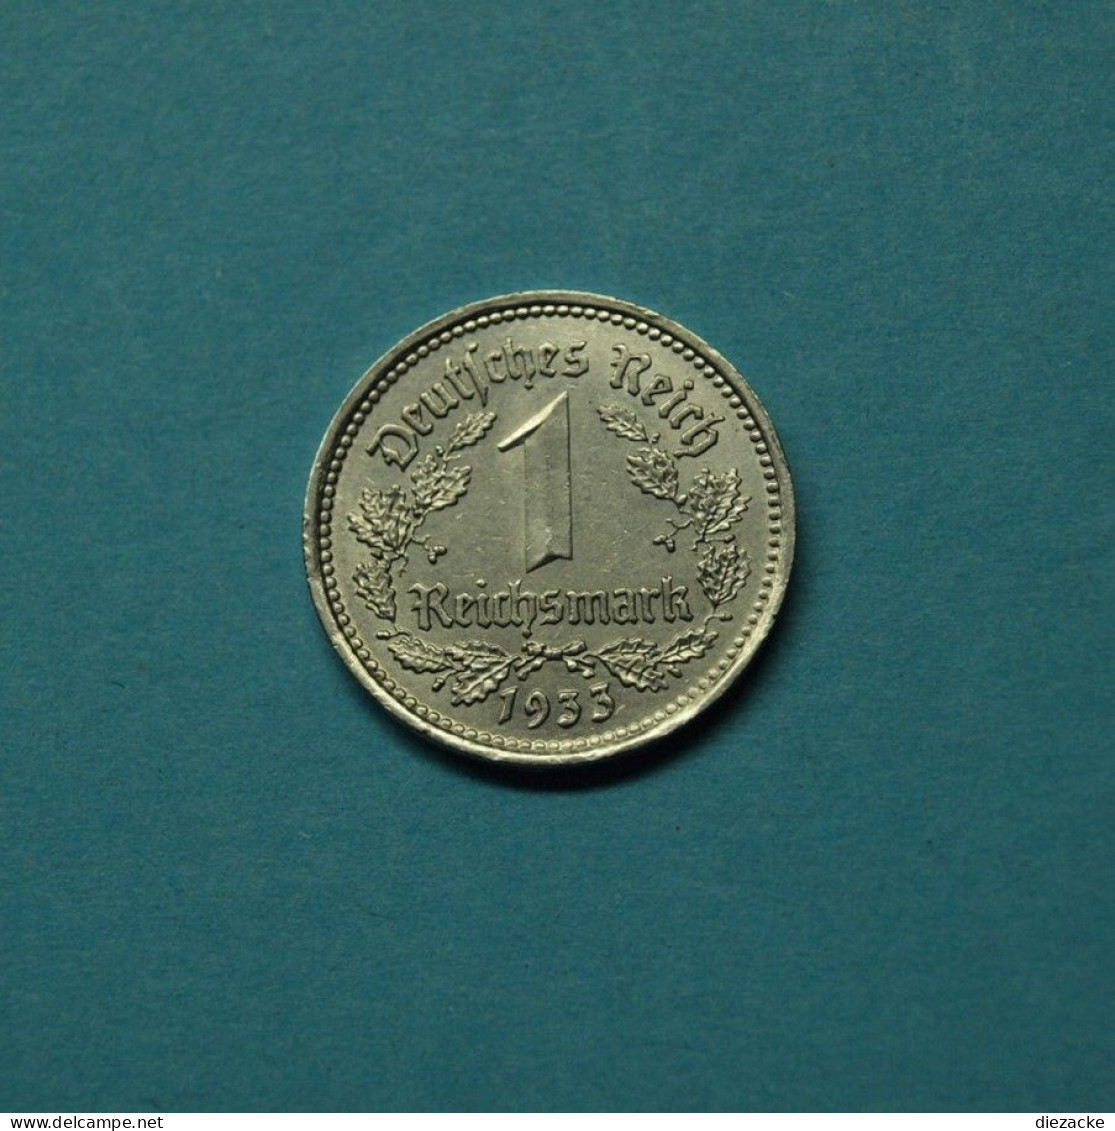 Deutsches Reich 1935 A 1 Reichsmark (M5246 - 1 Reichsmark